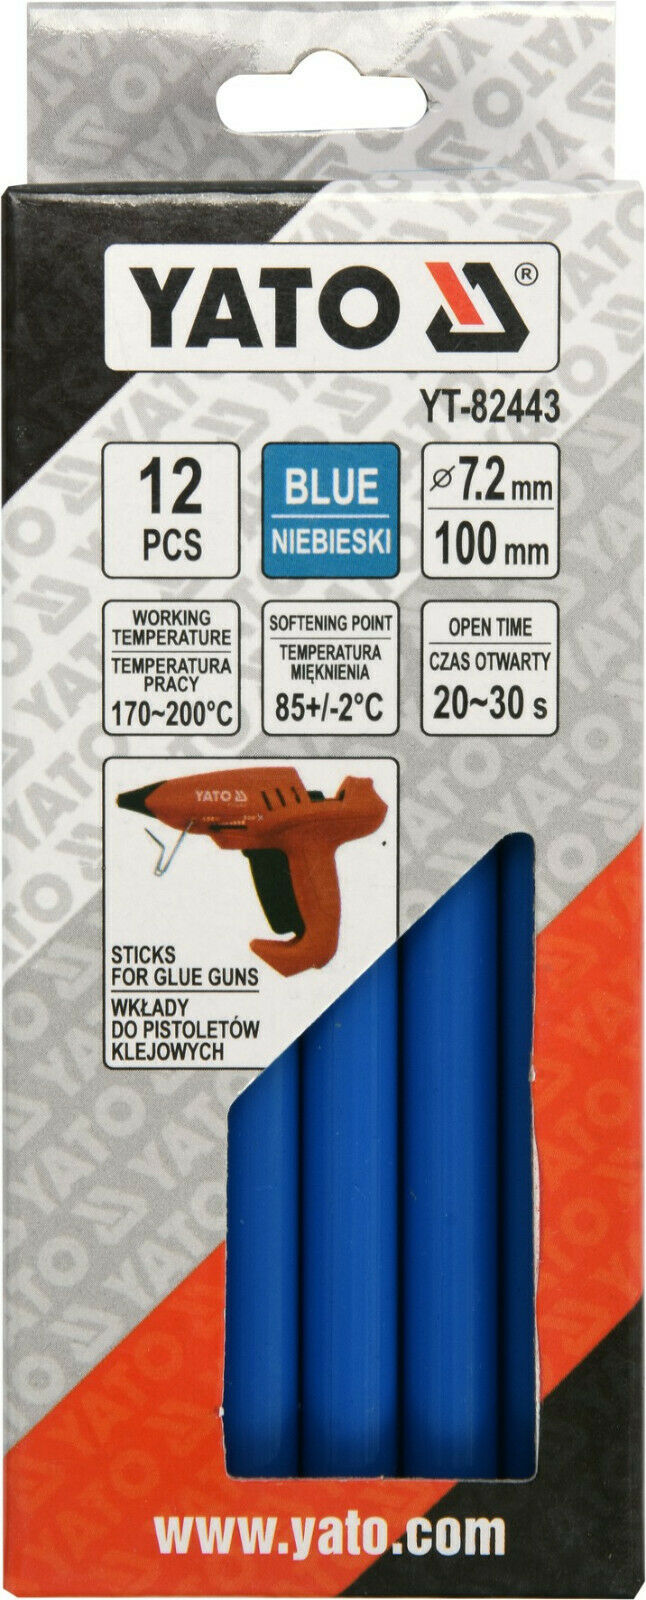 Yato YT-82443 Heißklebesticks blau Heißklebepistole Heißkleber Klebesticks